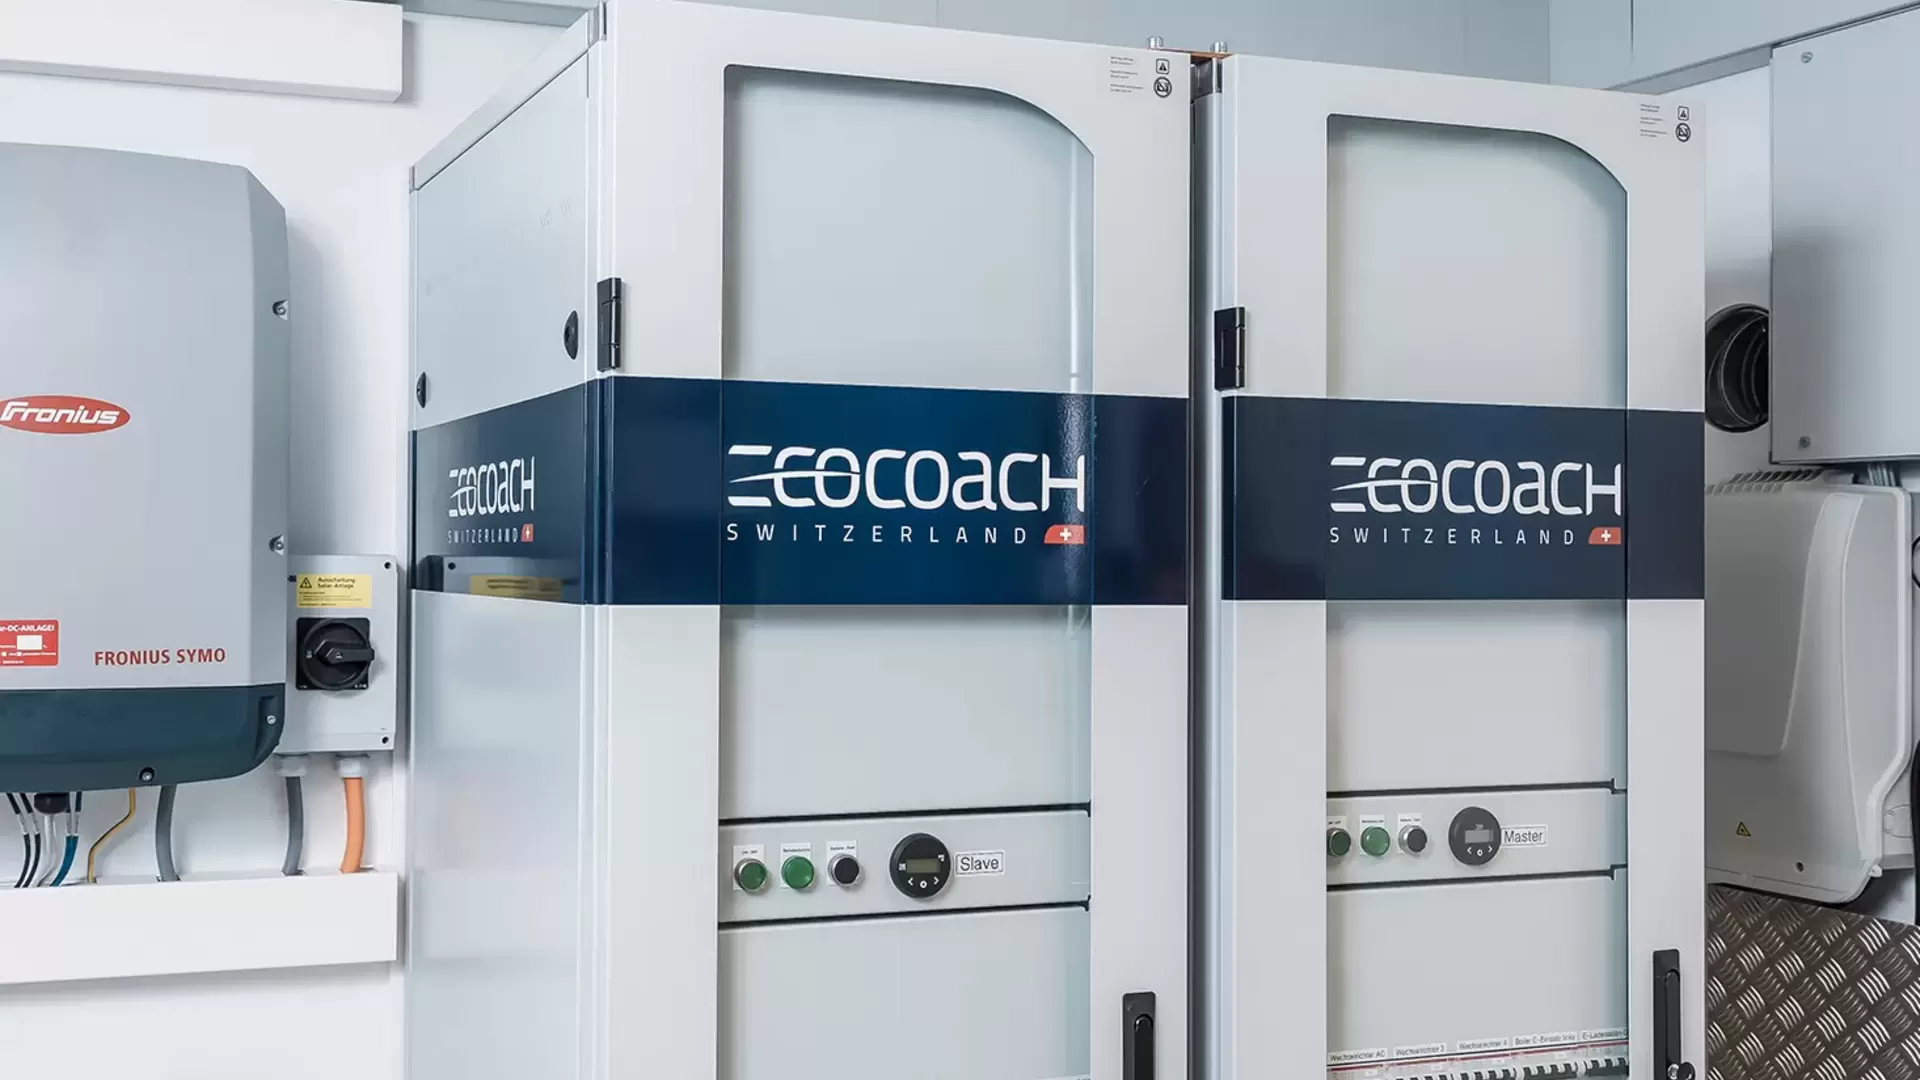 Installierte stationäre Batterie-Stromspeicher inklusive Energiemanagement der ecocoach AG